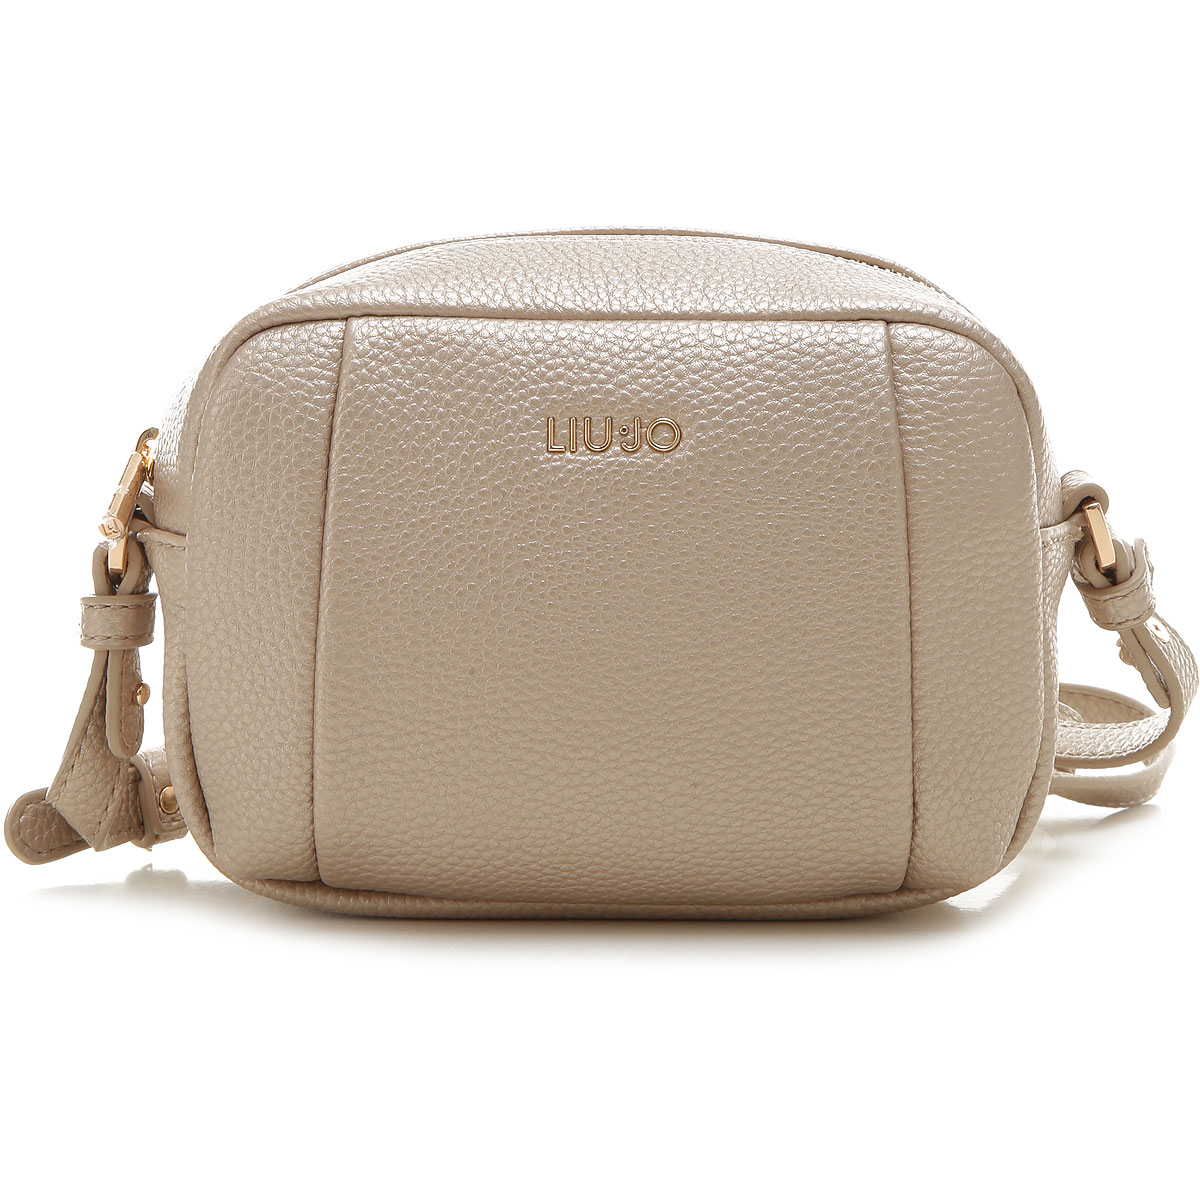 Handbags Liu Jo, Style aa1107e027-90048-B894